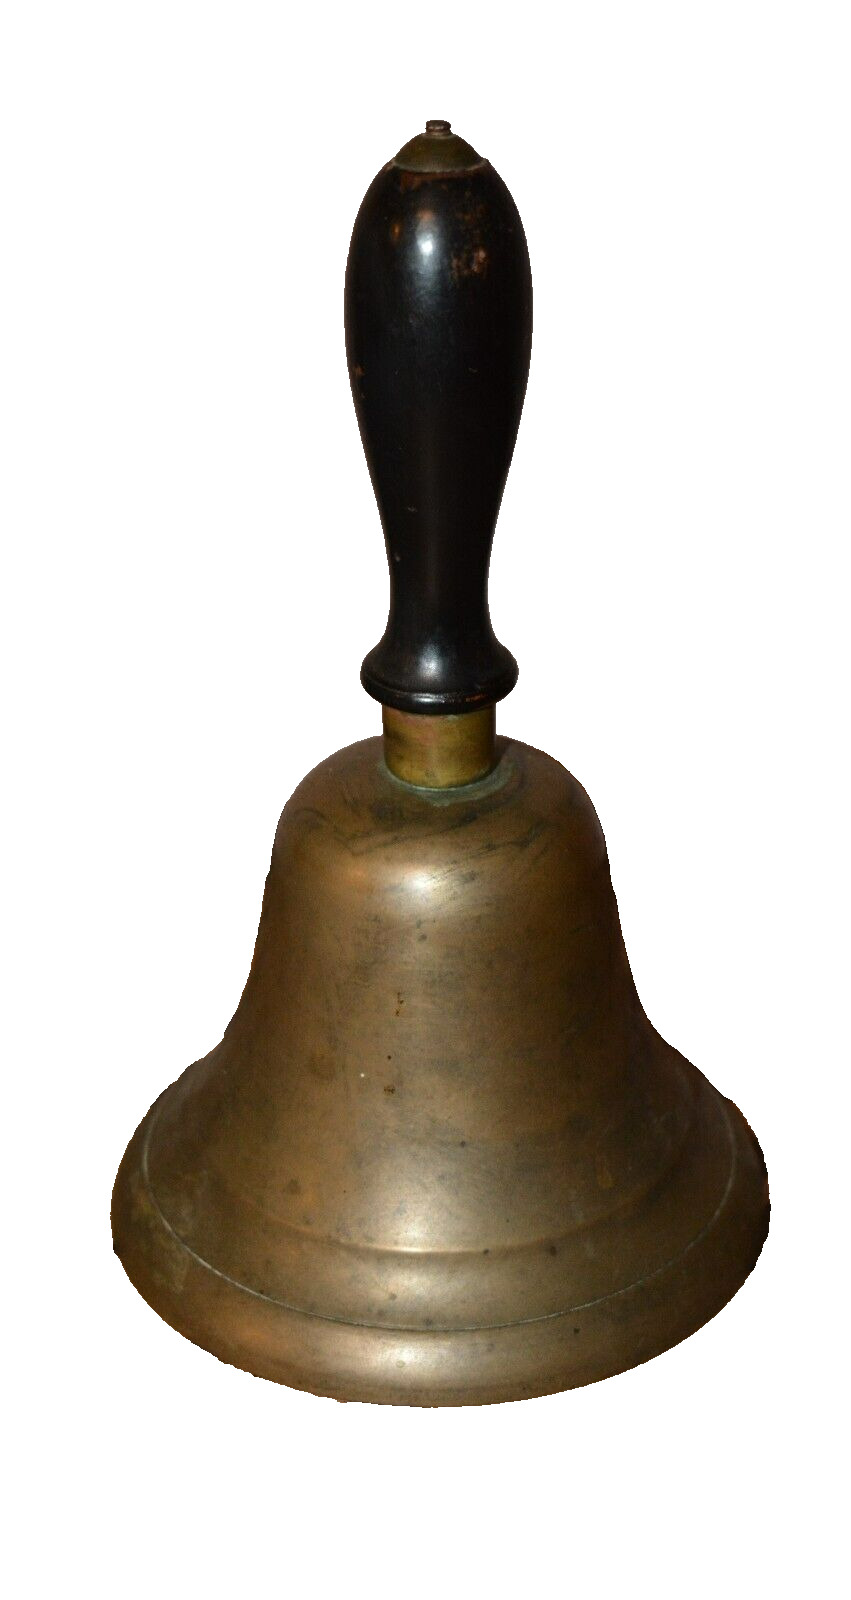 Antique Brass Hand Held Bell, School Bell, Wooden Handle